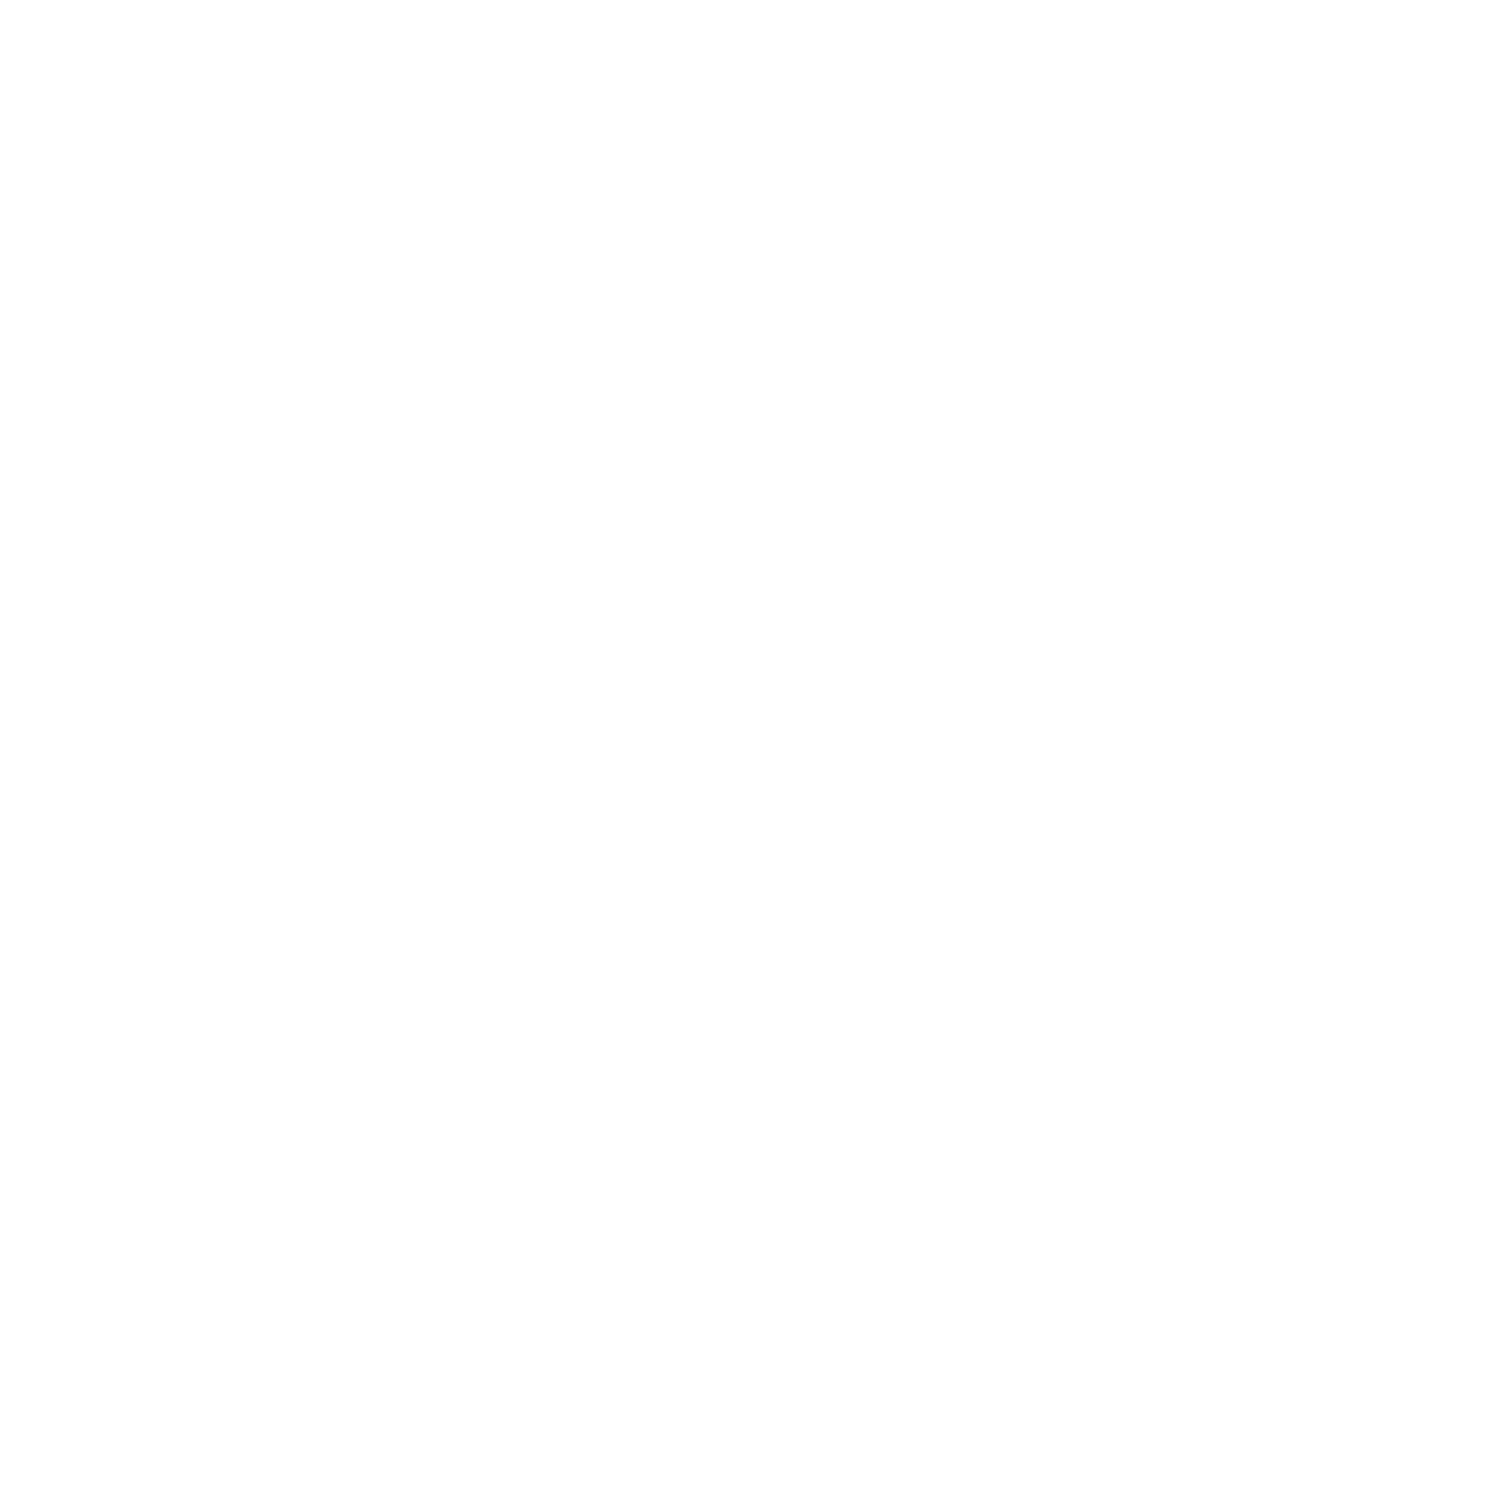 Avalanche and Andretti Formula E Logo Lockup